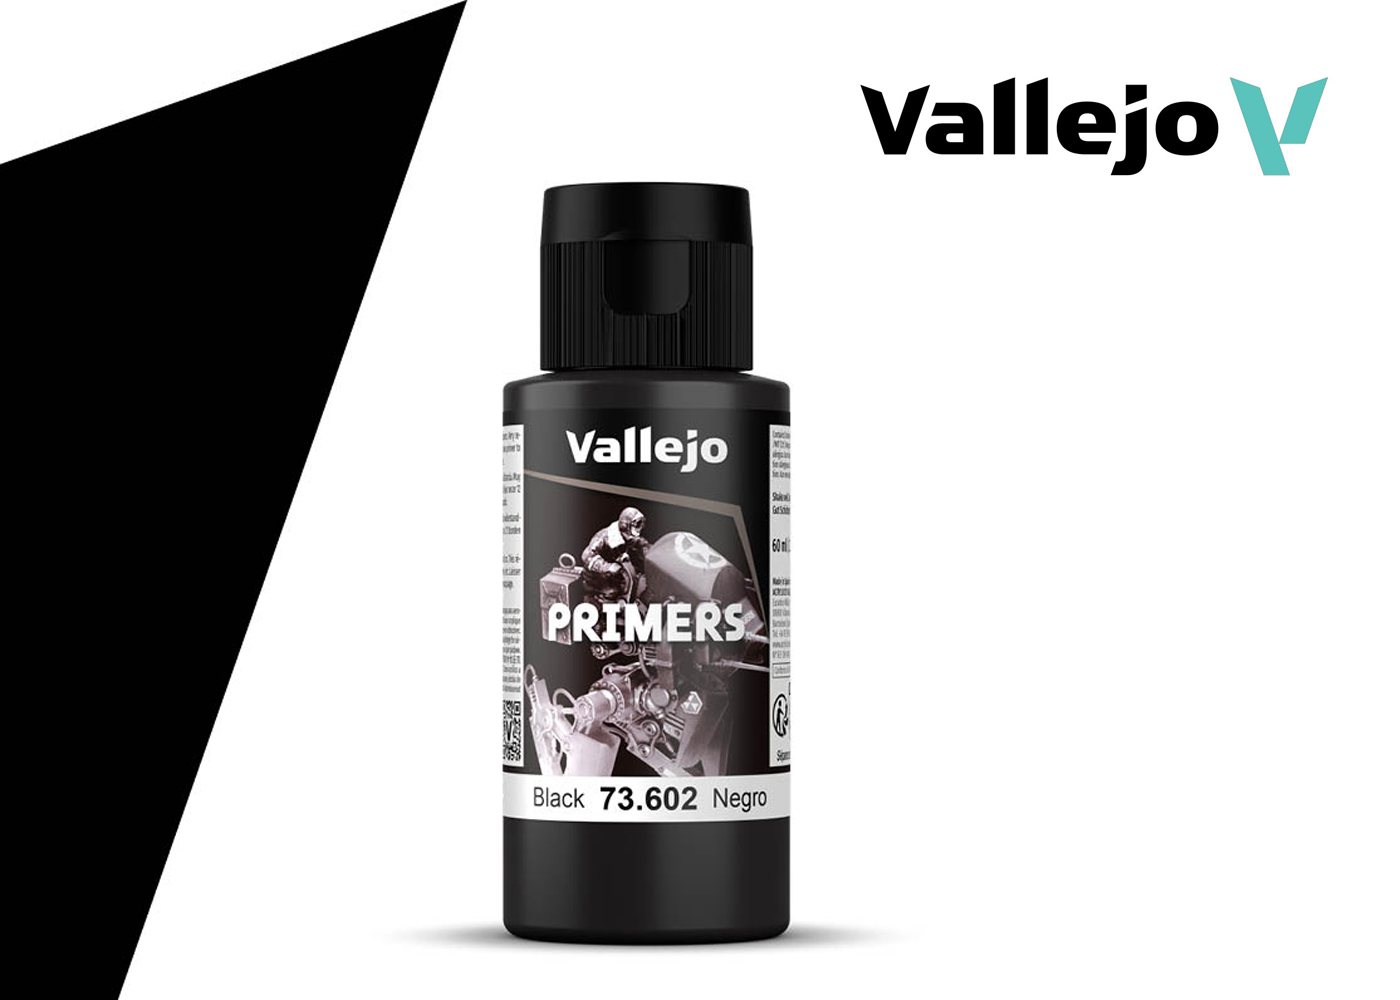 Vallejo Mecha Primer 17/60/200ml - AliExpress